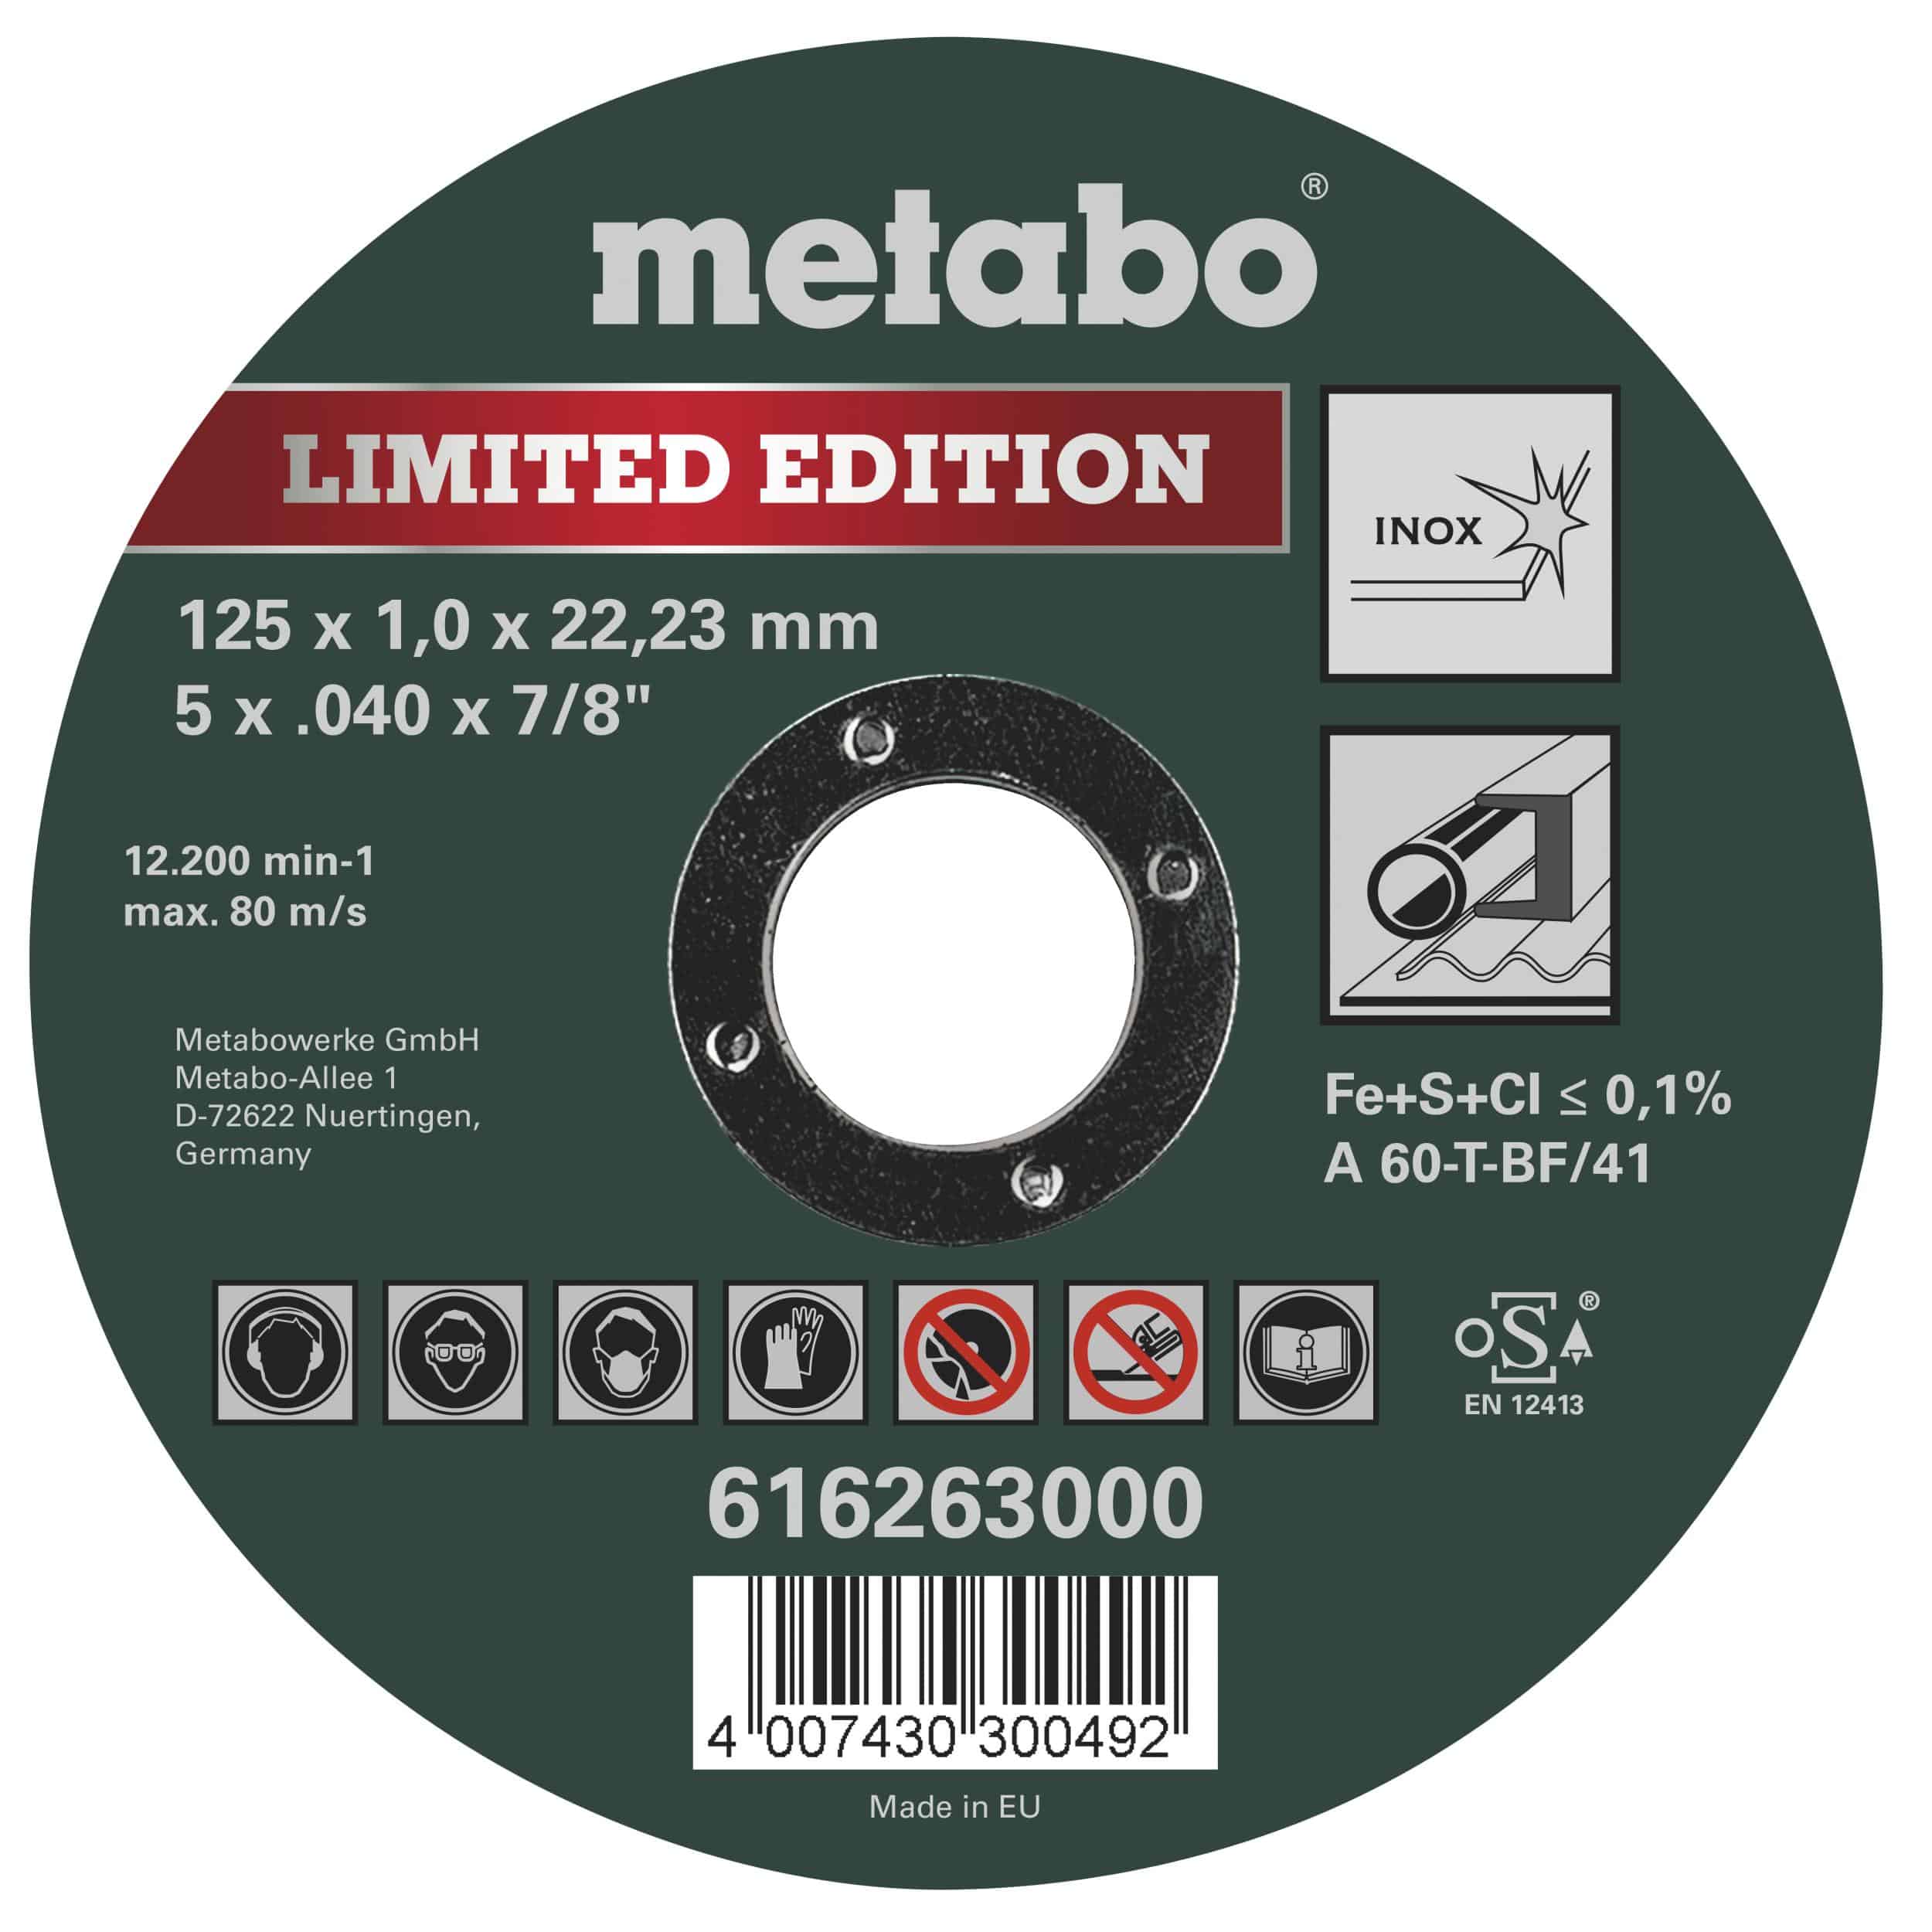 Metabo Trennscheiben Inox Special Edition II, 125 mm, 25 Stück